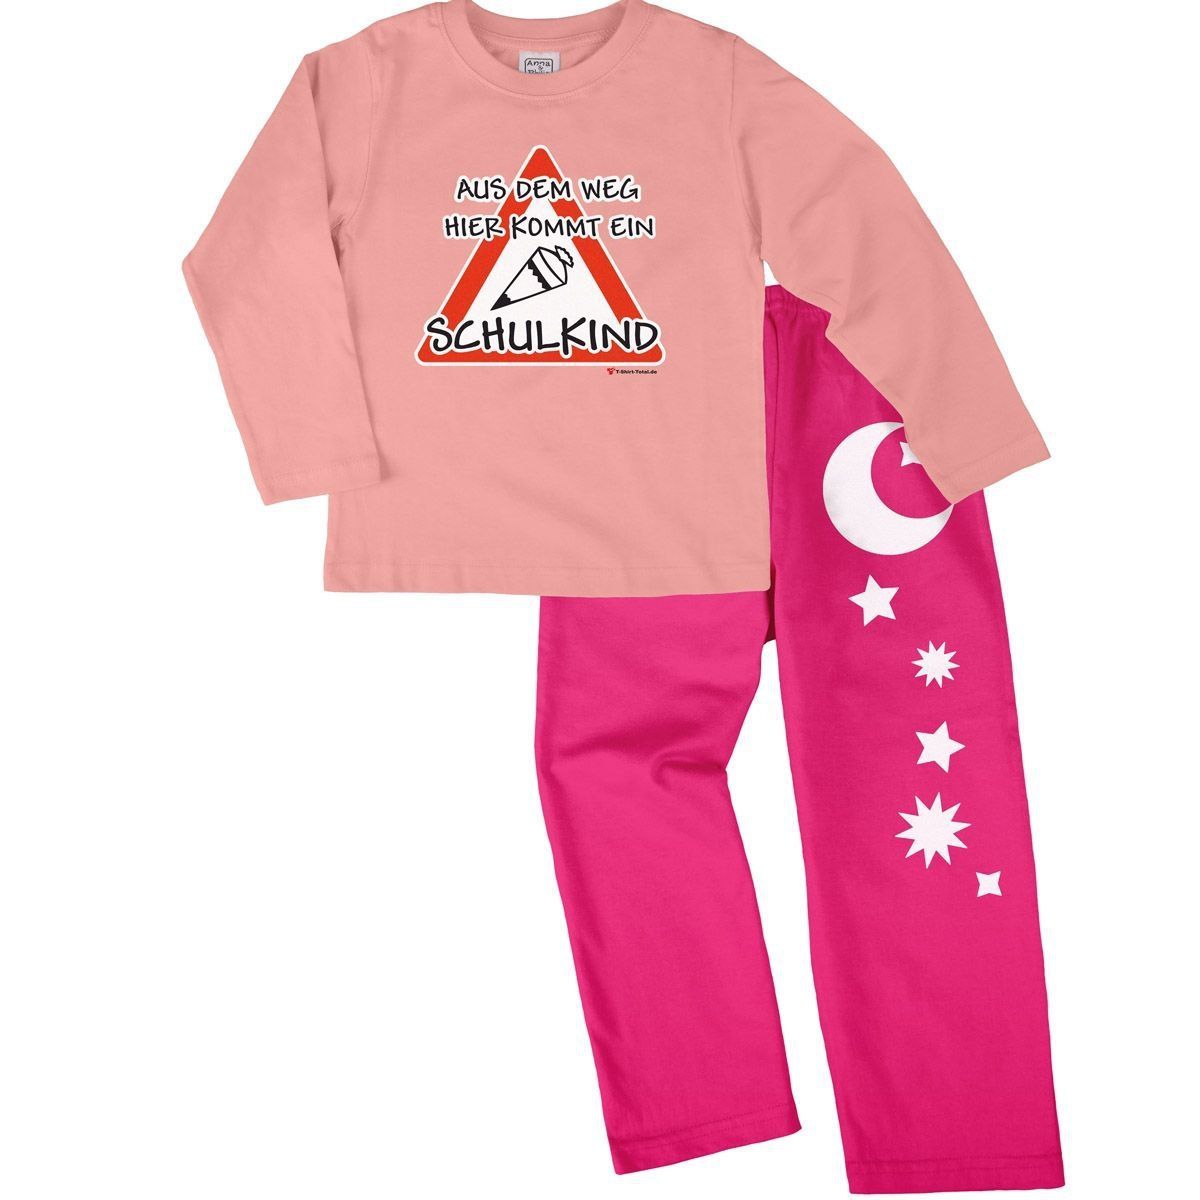 Kommt ein Schulkind Pyjama Set rosa / pink 122 / 128